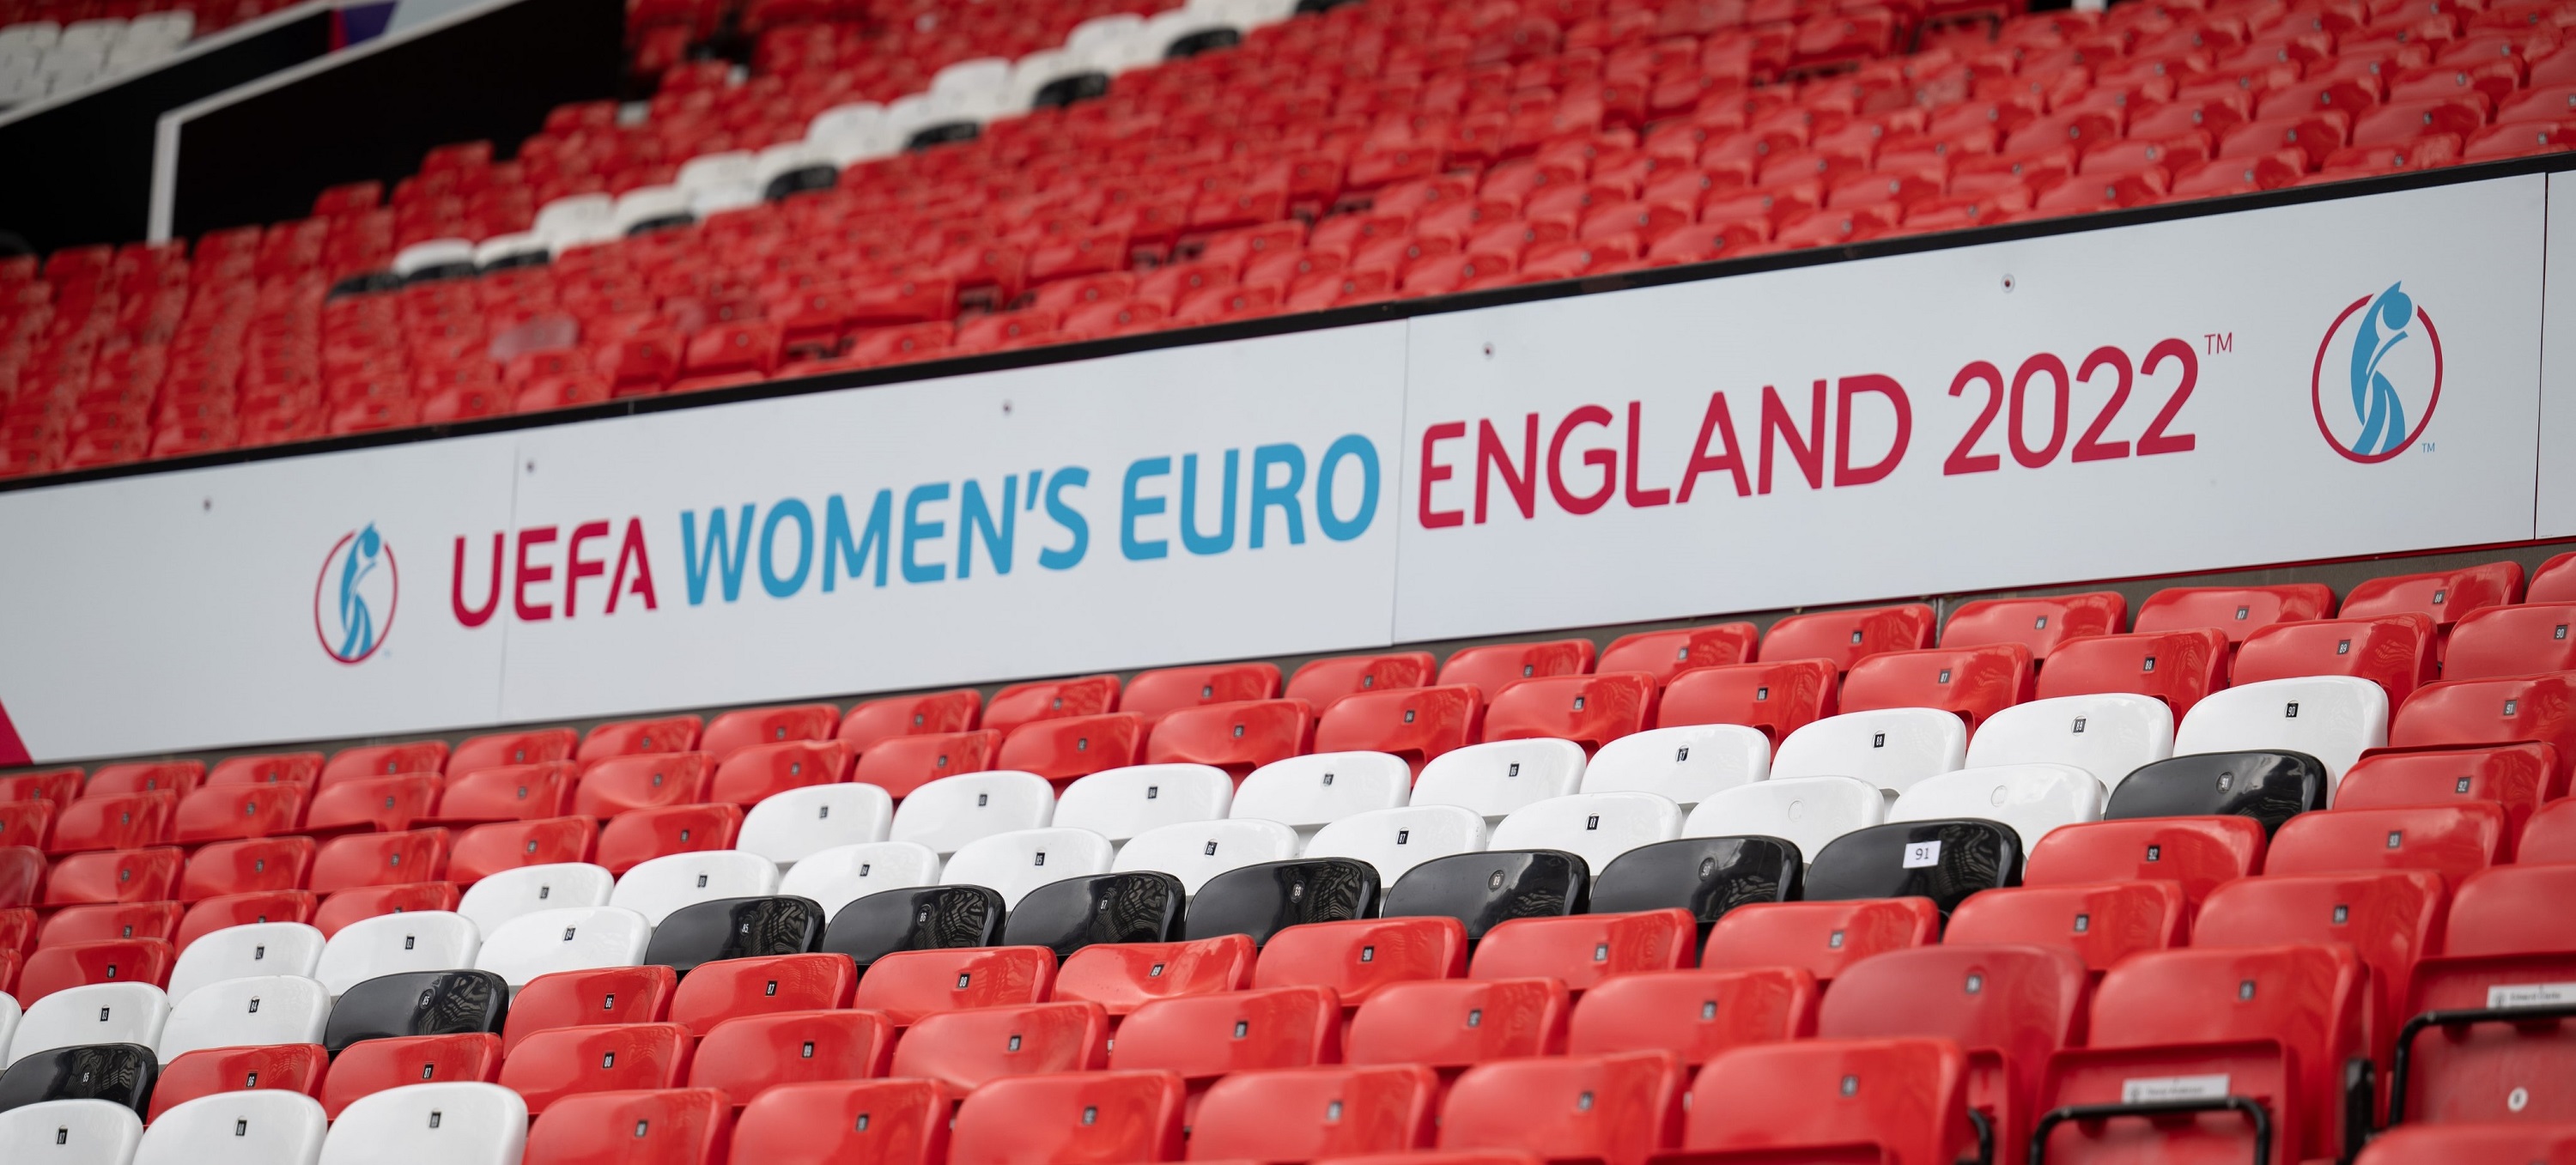 Daftar Lengkap Peserta Piala Eropa Wanita 2022, Siapa Jagoan Kamu?